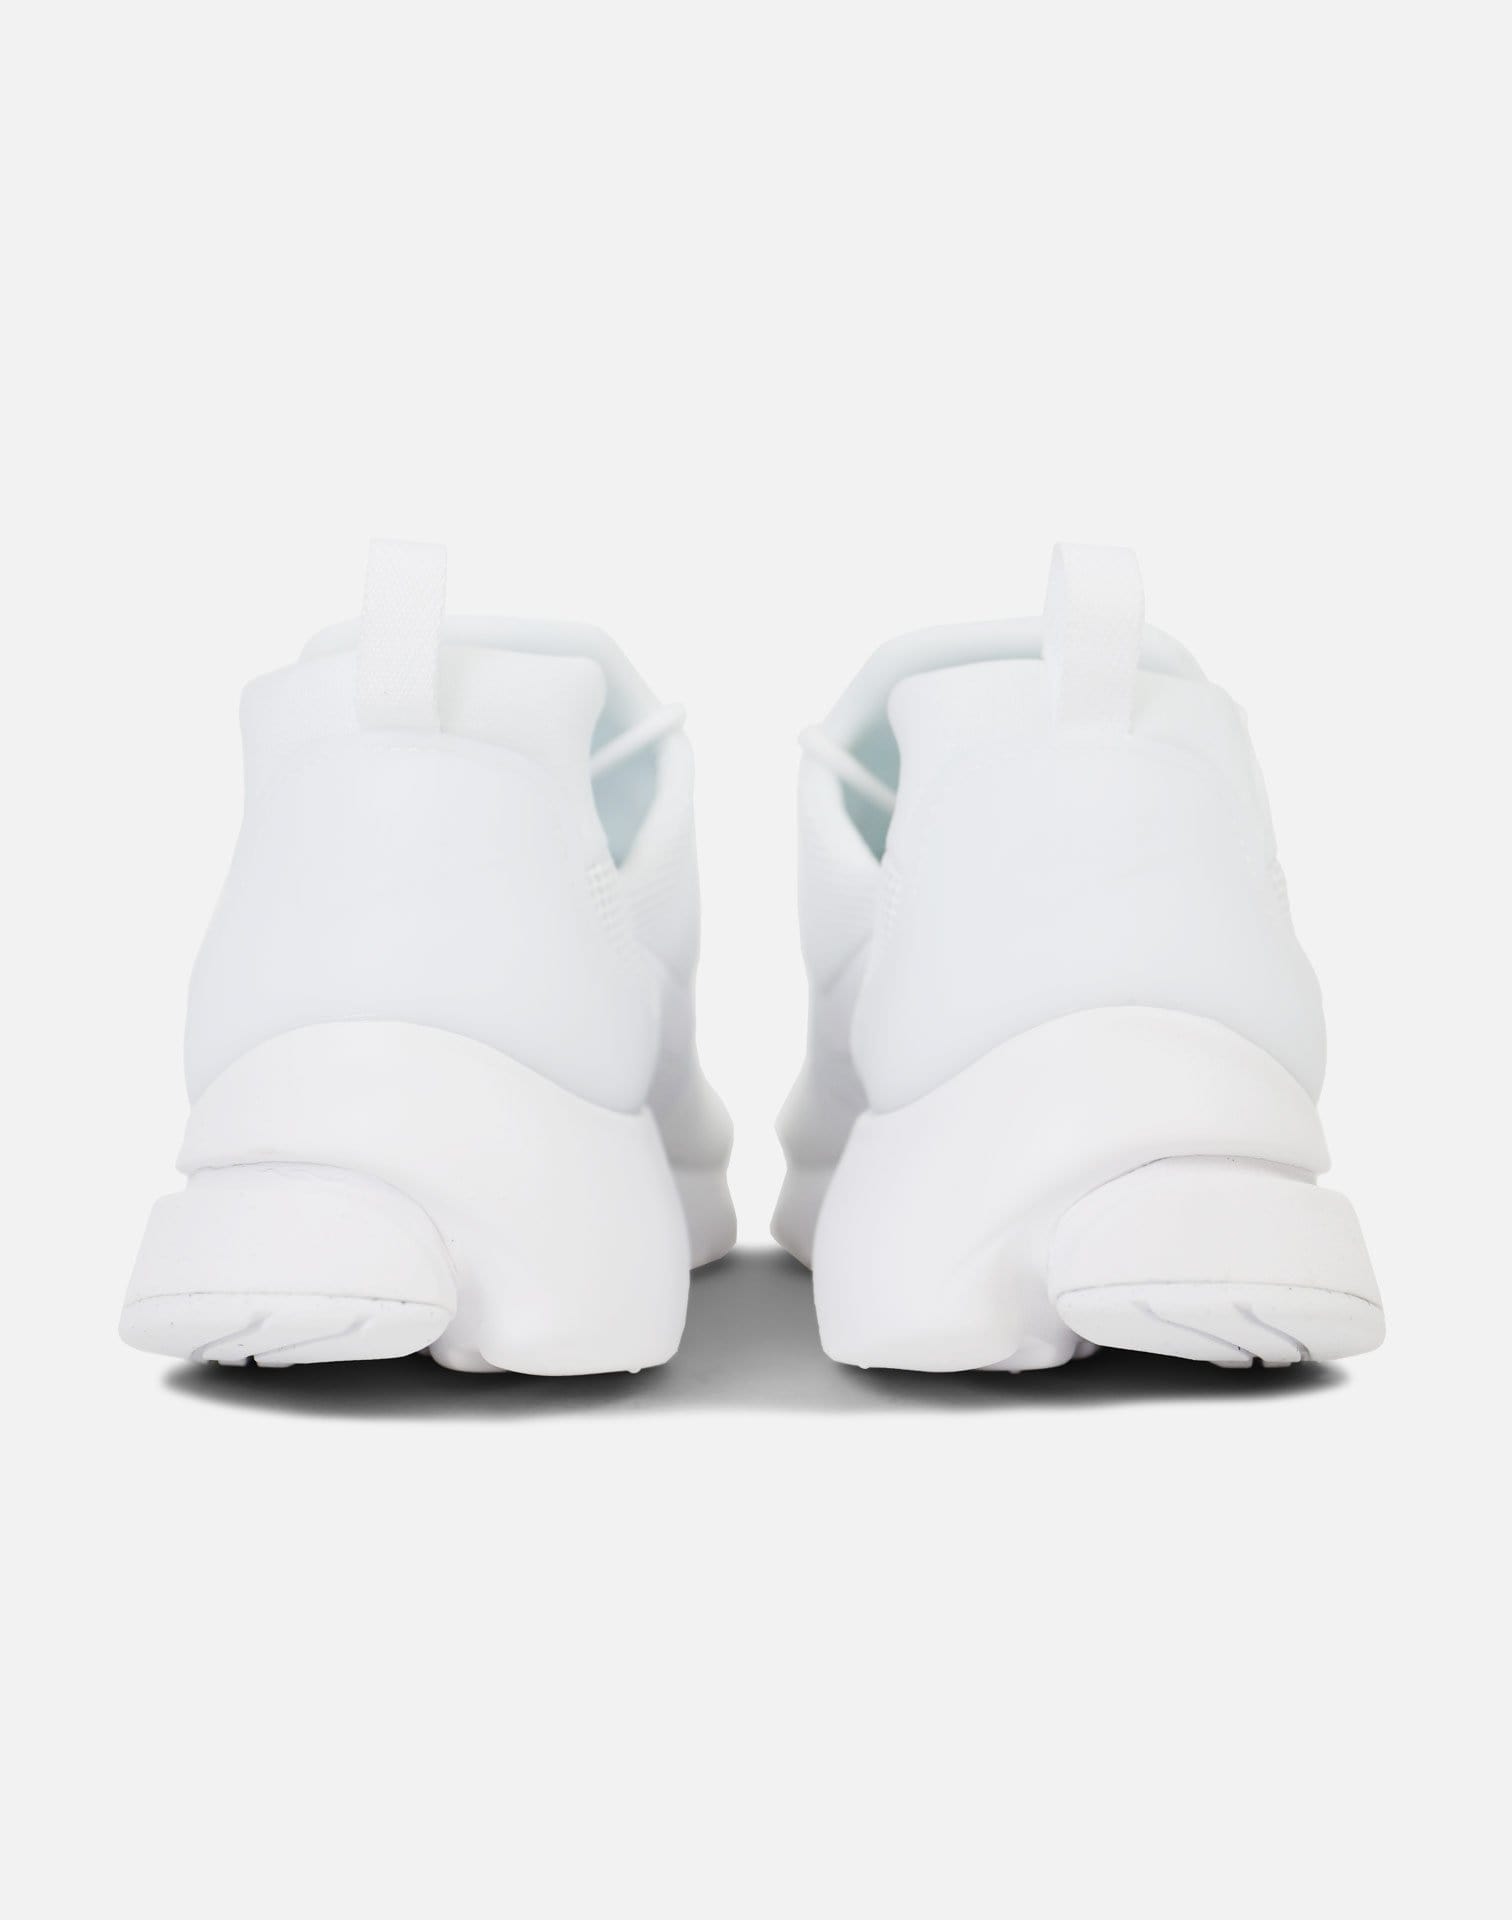 Nike Presto Fly (White/White-White)